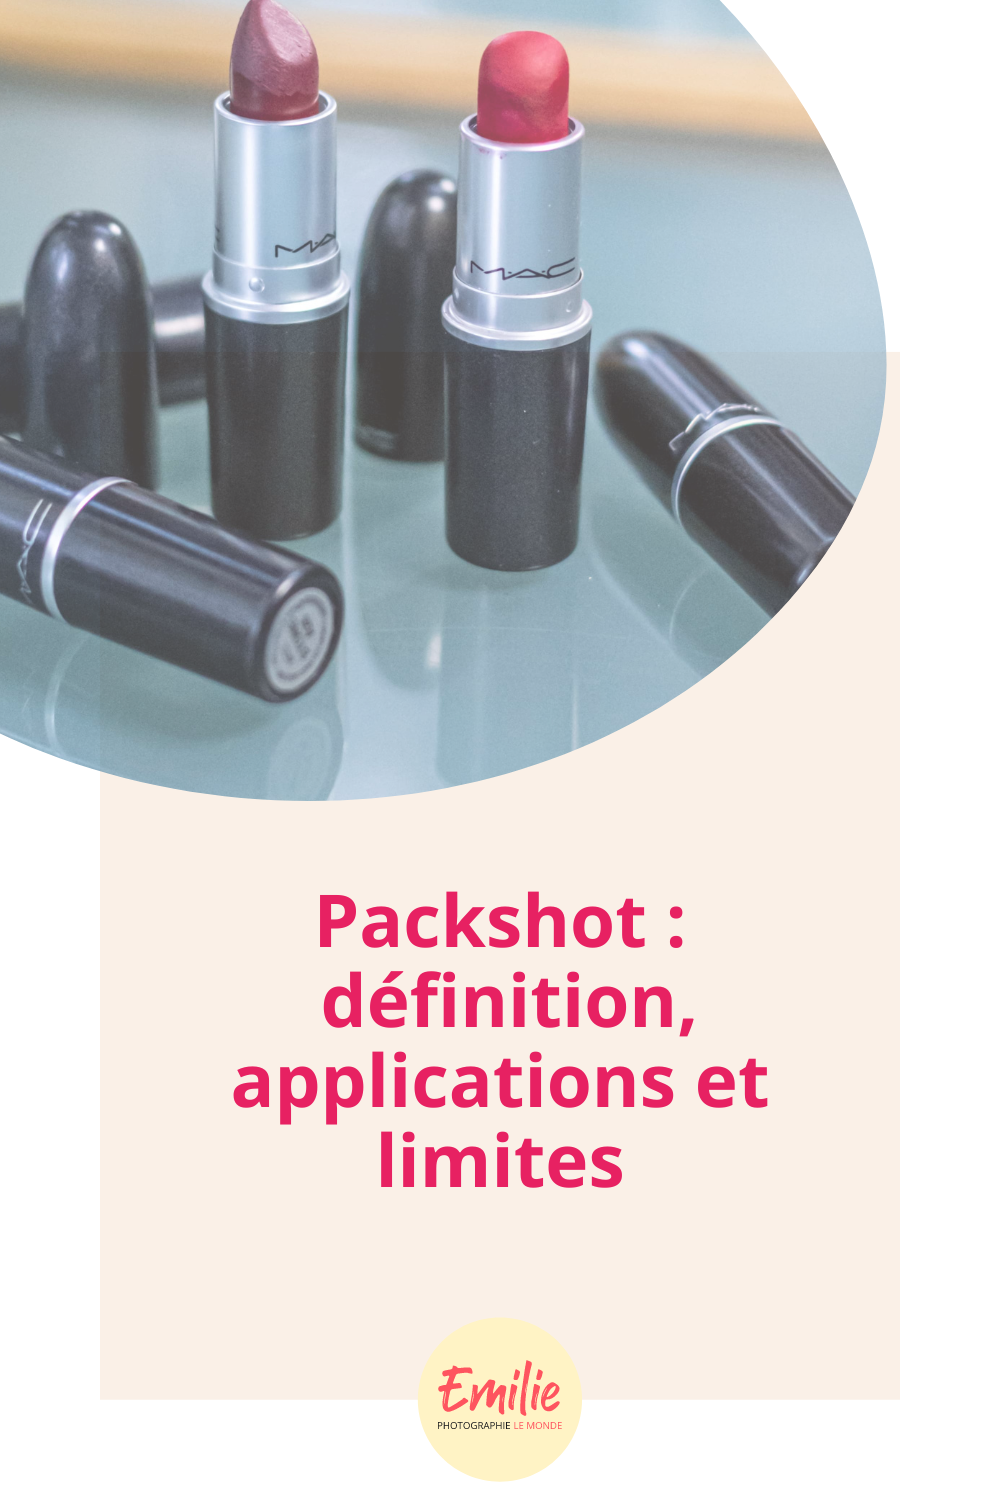 Packshot : définition, applications et limites